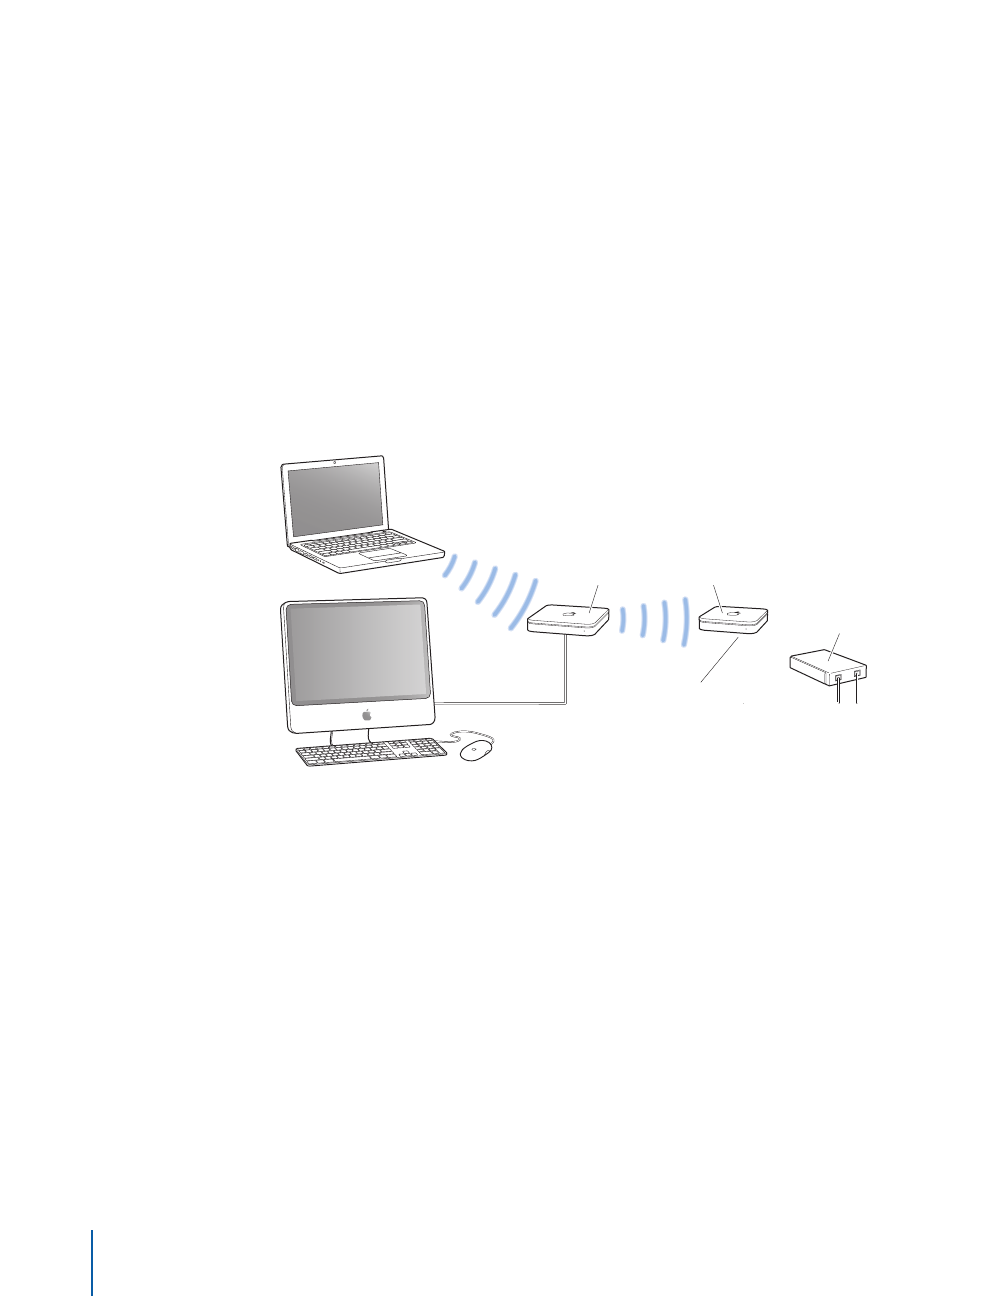 Apple AirPort 유틸리티를 사용하여 네트워크 구성하기 User Manual Air Port 유틸리티에 Mac OS X